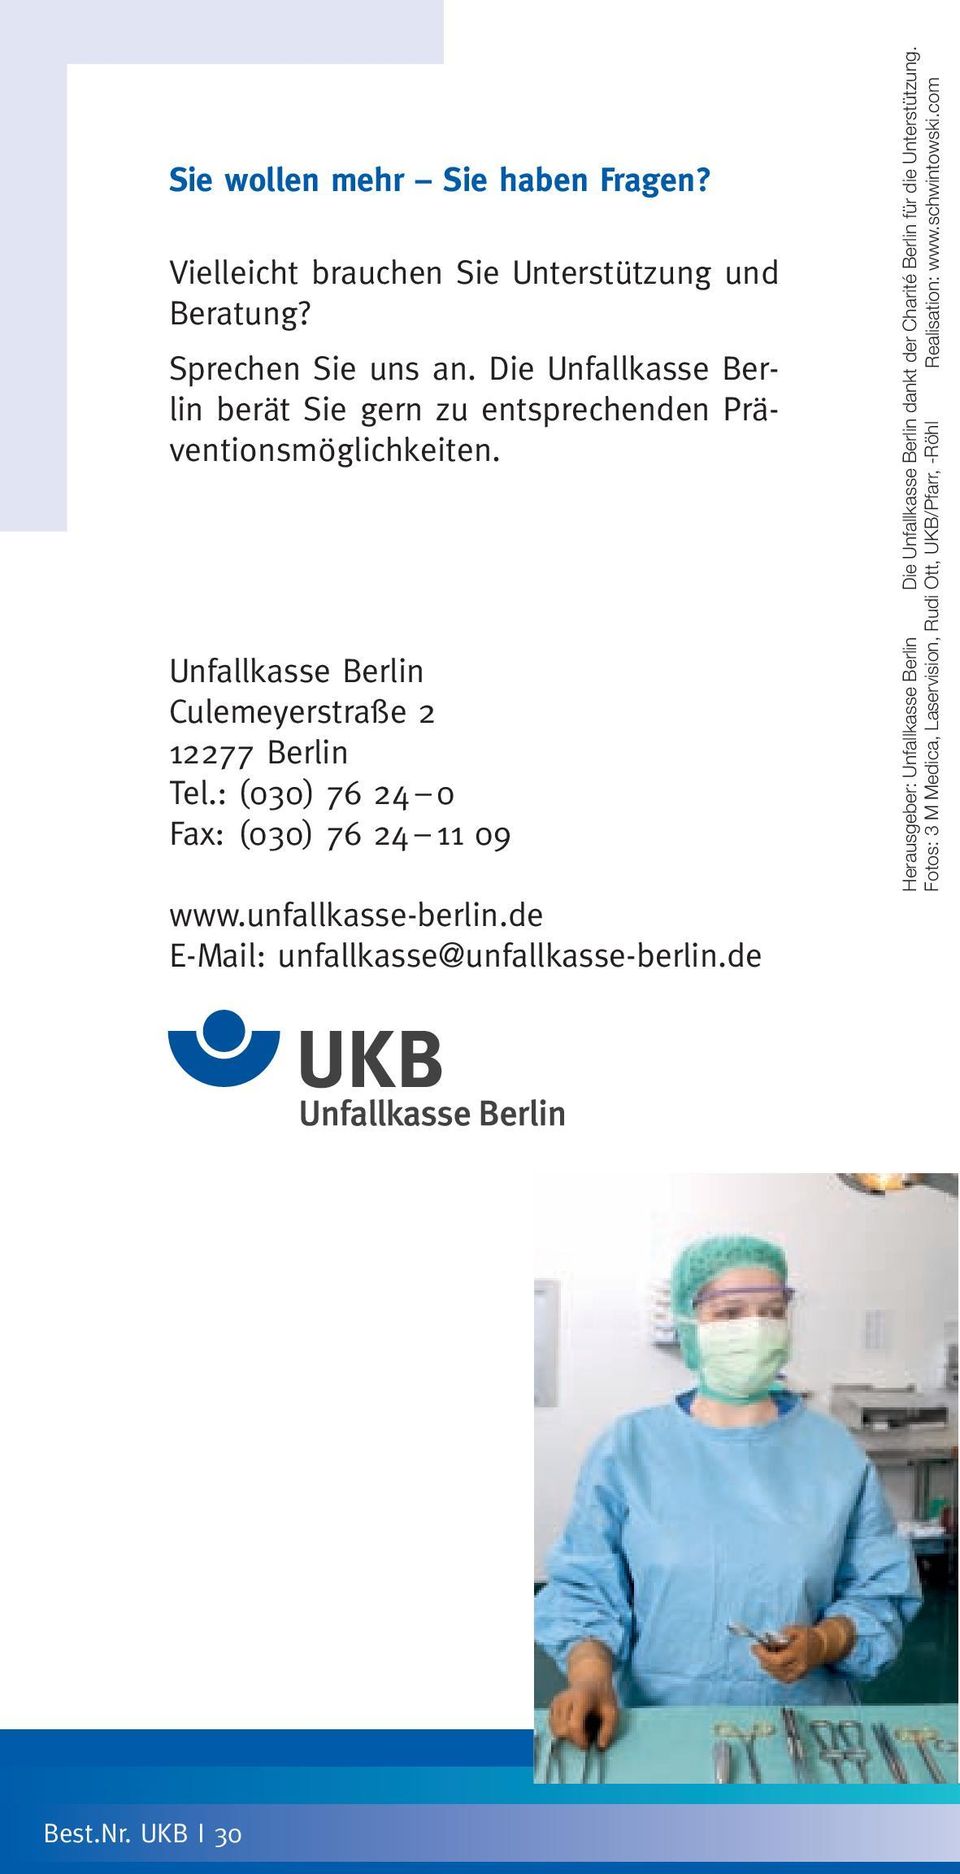 : (030) 76 24 0 Fax: (030) 76 24 11 09 www.unfallkasse-berlin.de E-Mail: unfallkasse@unfallkasse-berlin.